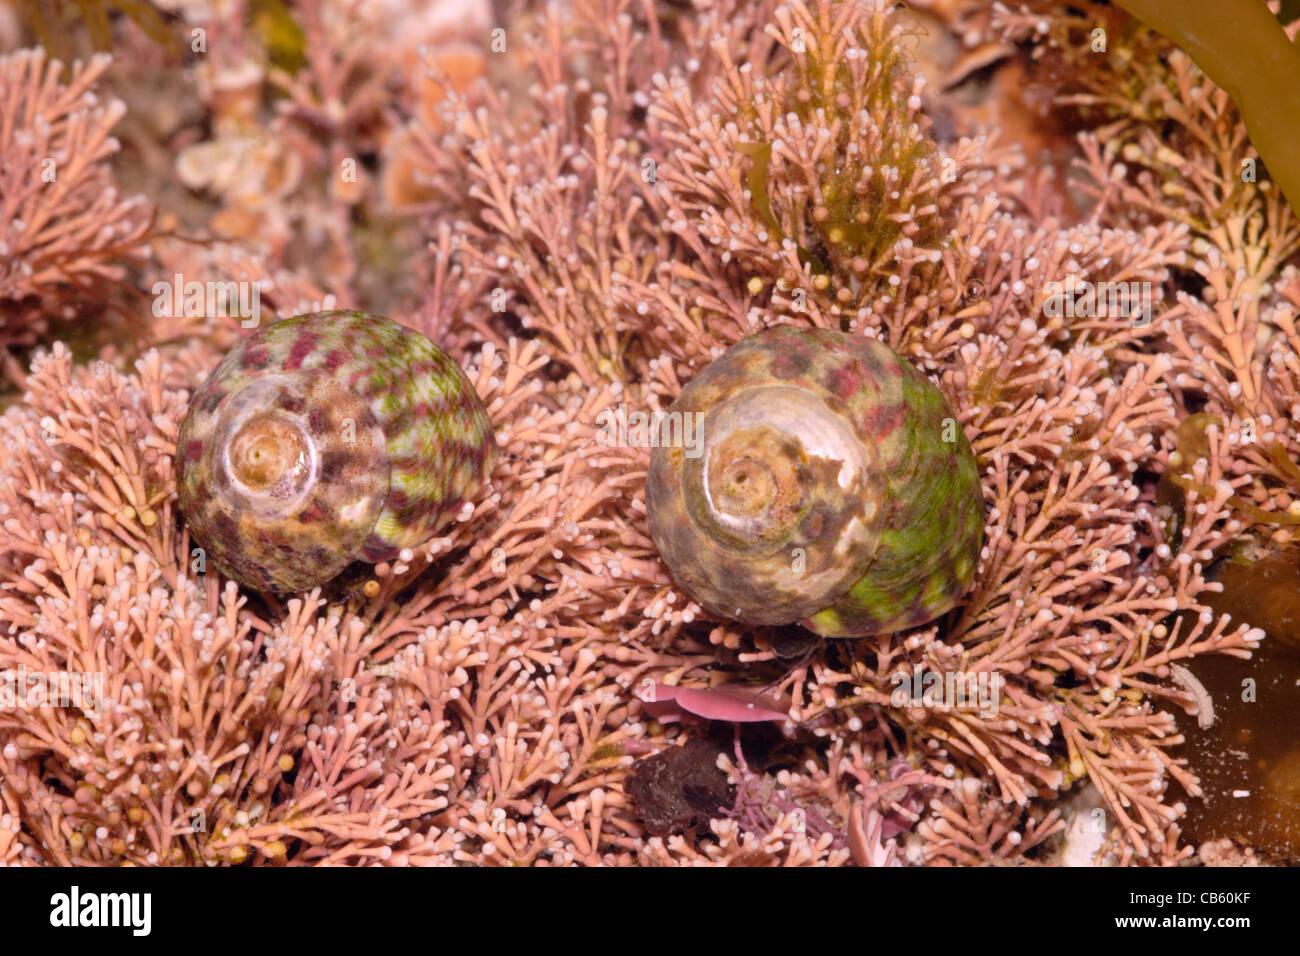 Flat top shells (Gibbula umbilicalis : Trochidae) on coralweed in a rockpool, UK. Stock Photo